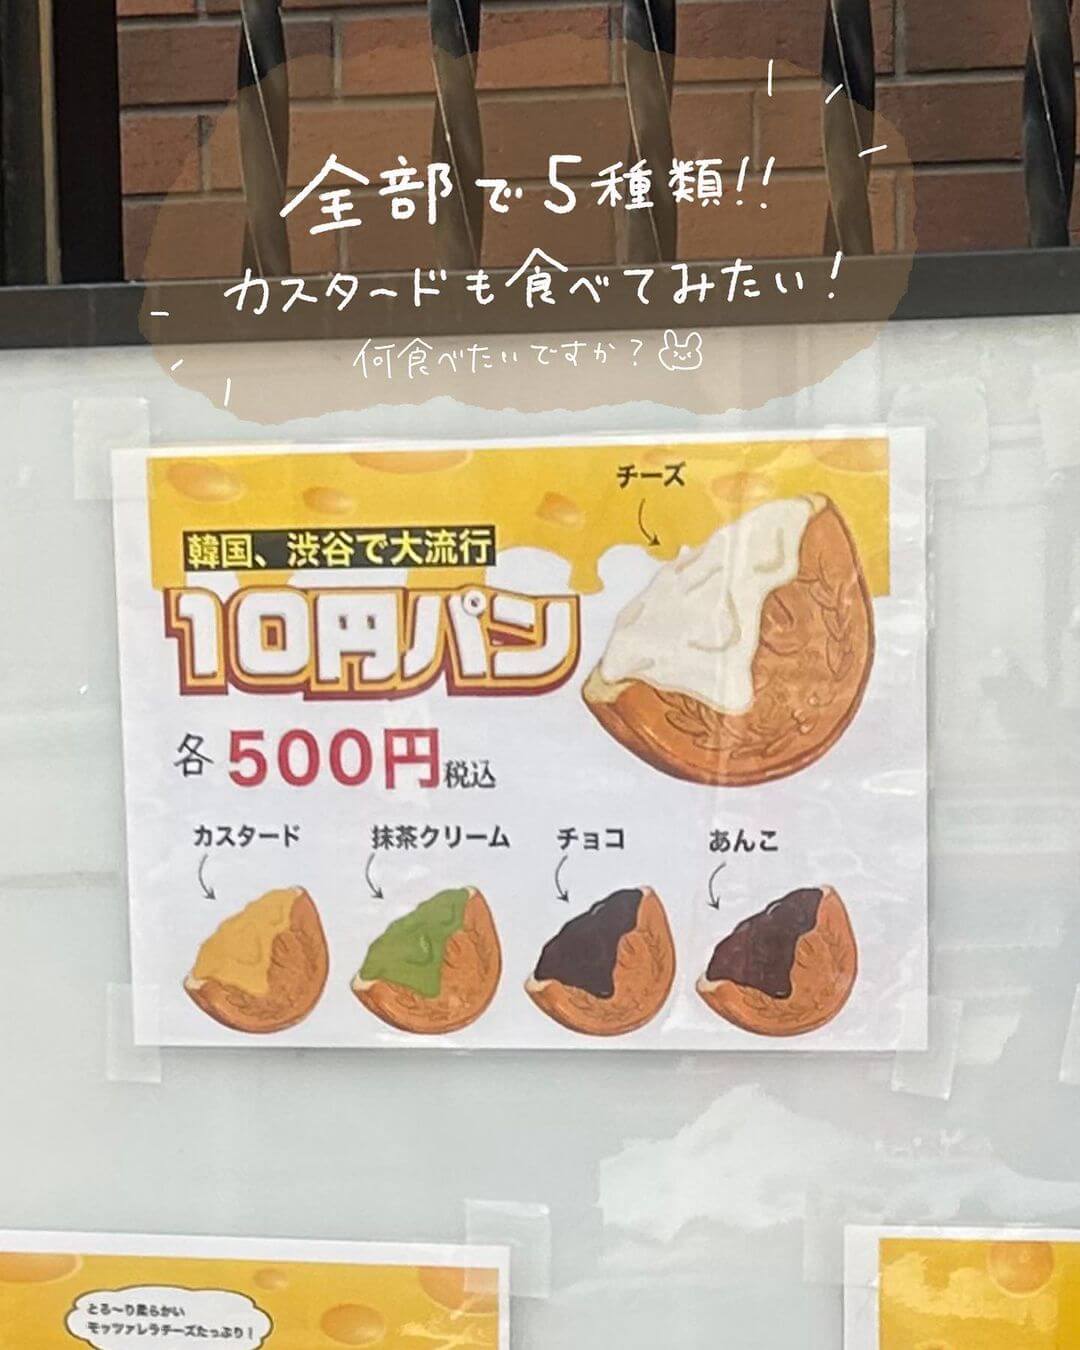 10円パン 札幌のメニュー